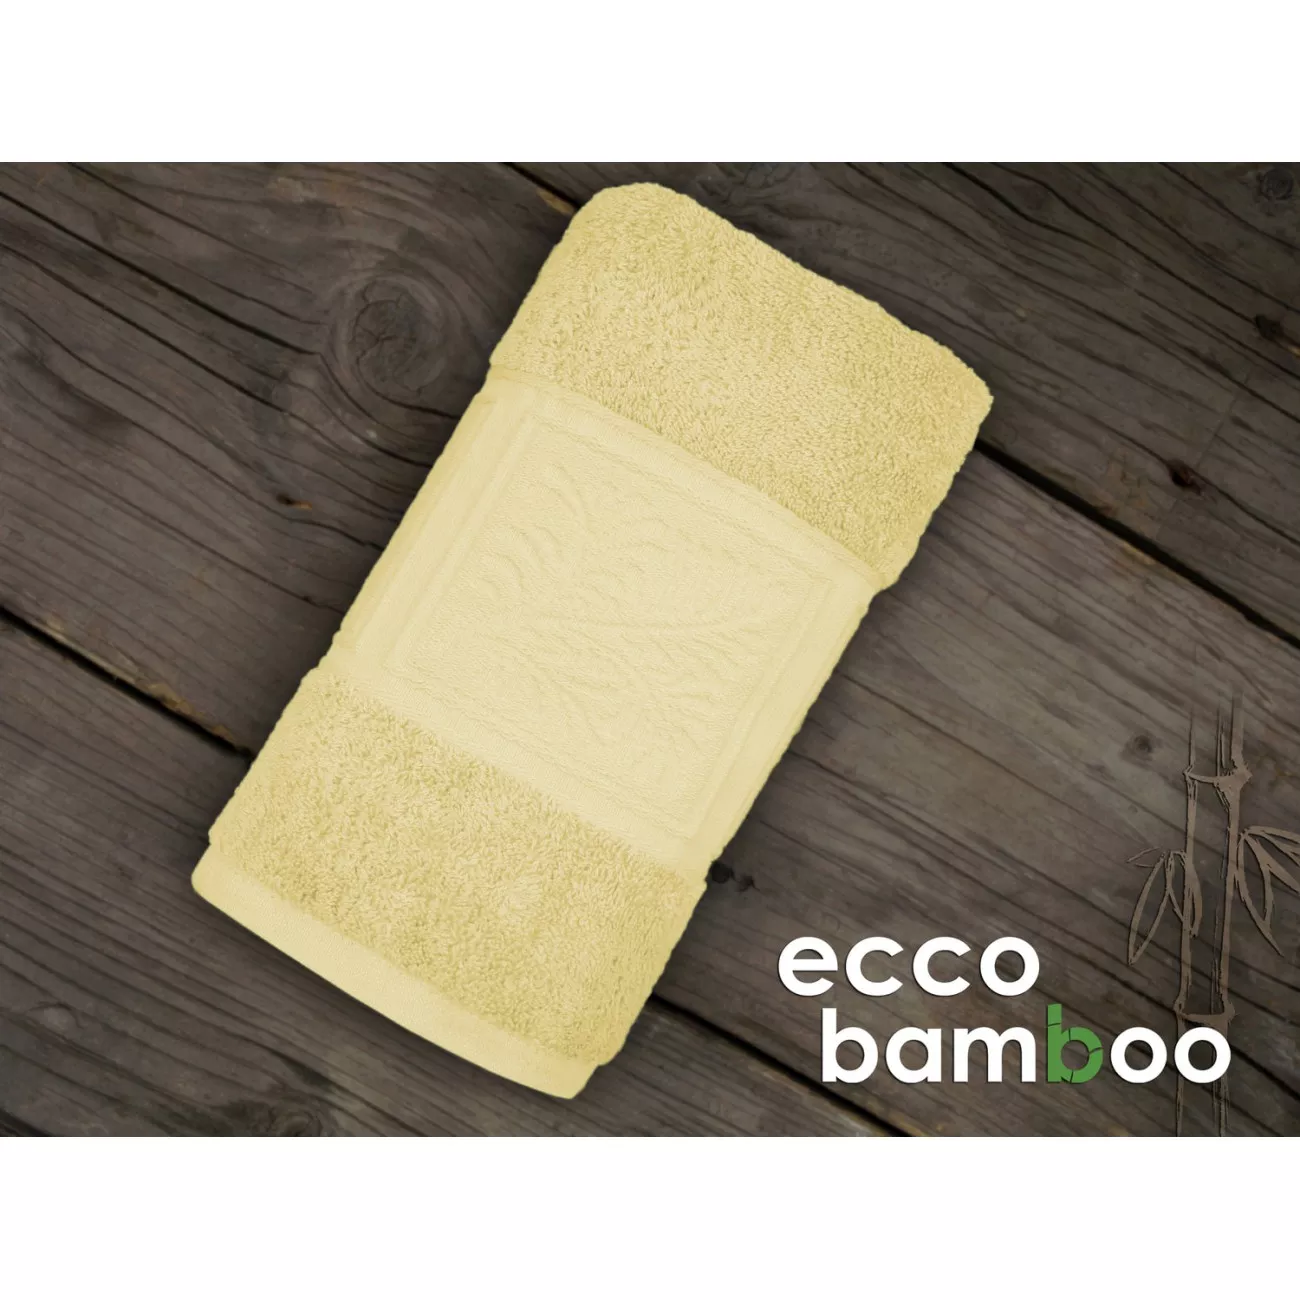 Ręcznik 50x90 bambus bawełna żółty ECCO BAMBOO - 1